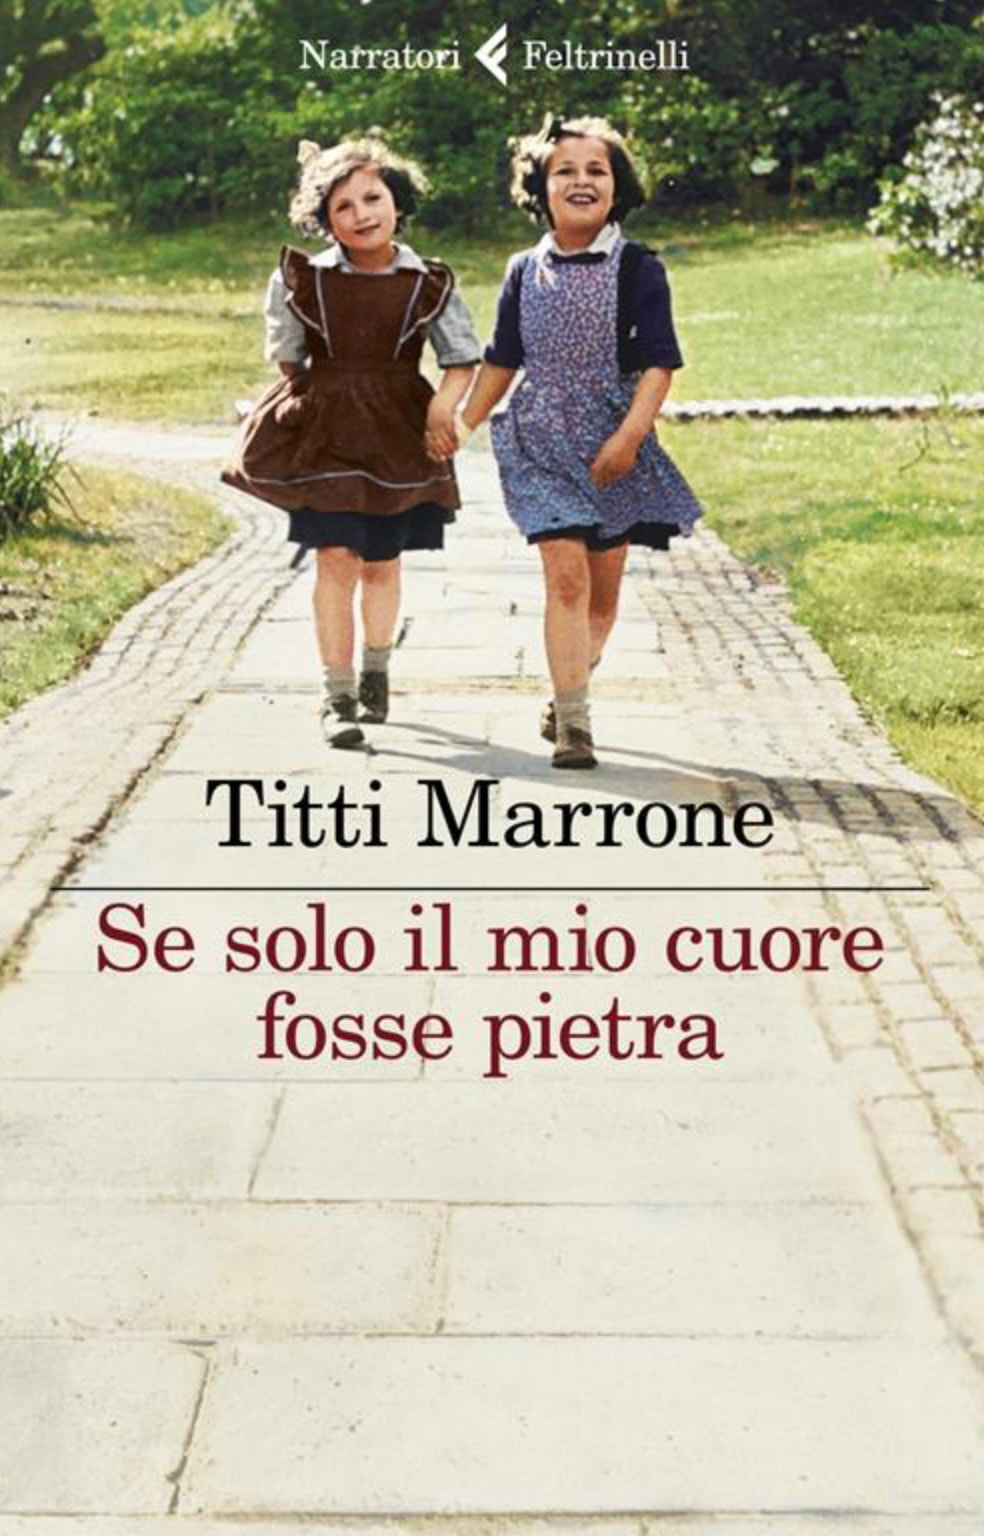 Titti Marrone, Feltrinelli, libro, shoah, Studio Pancallo, psicologia , psicoterapia, psicologa